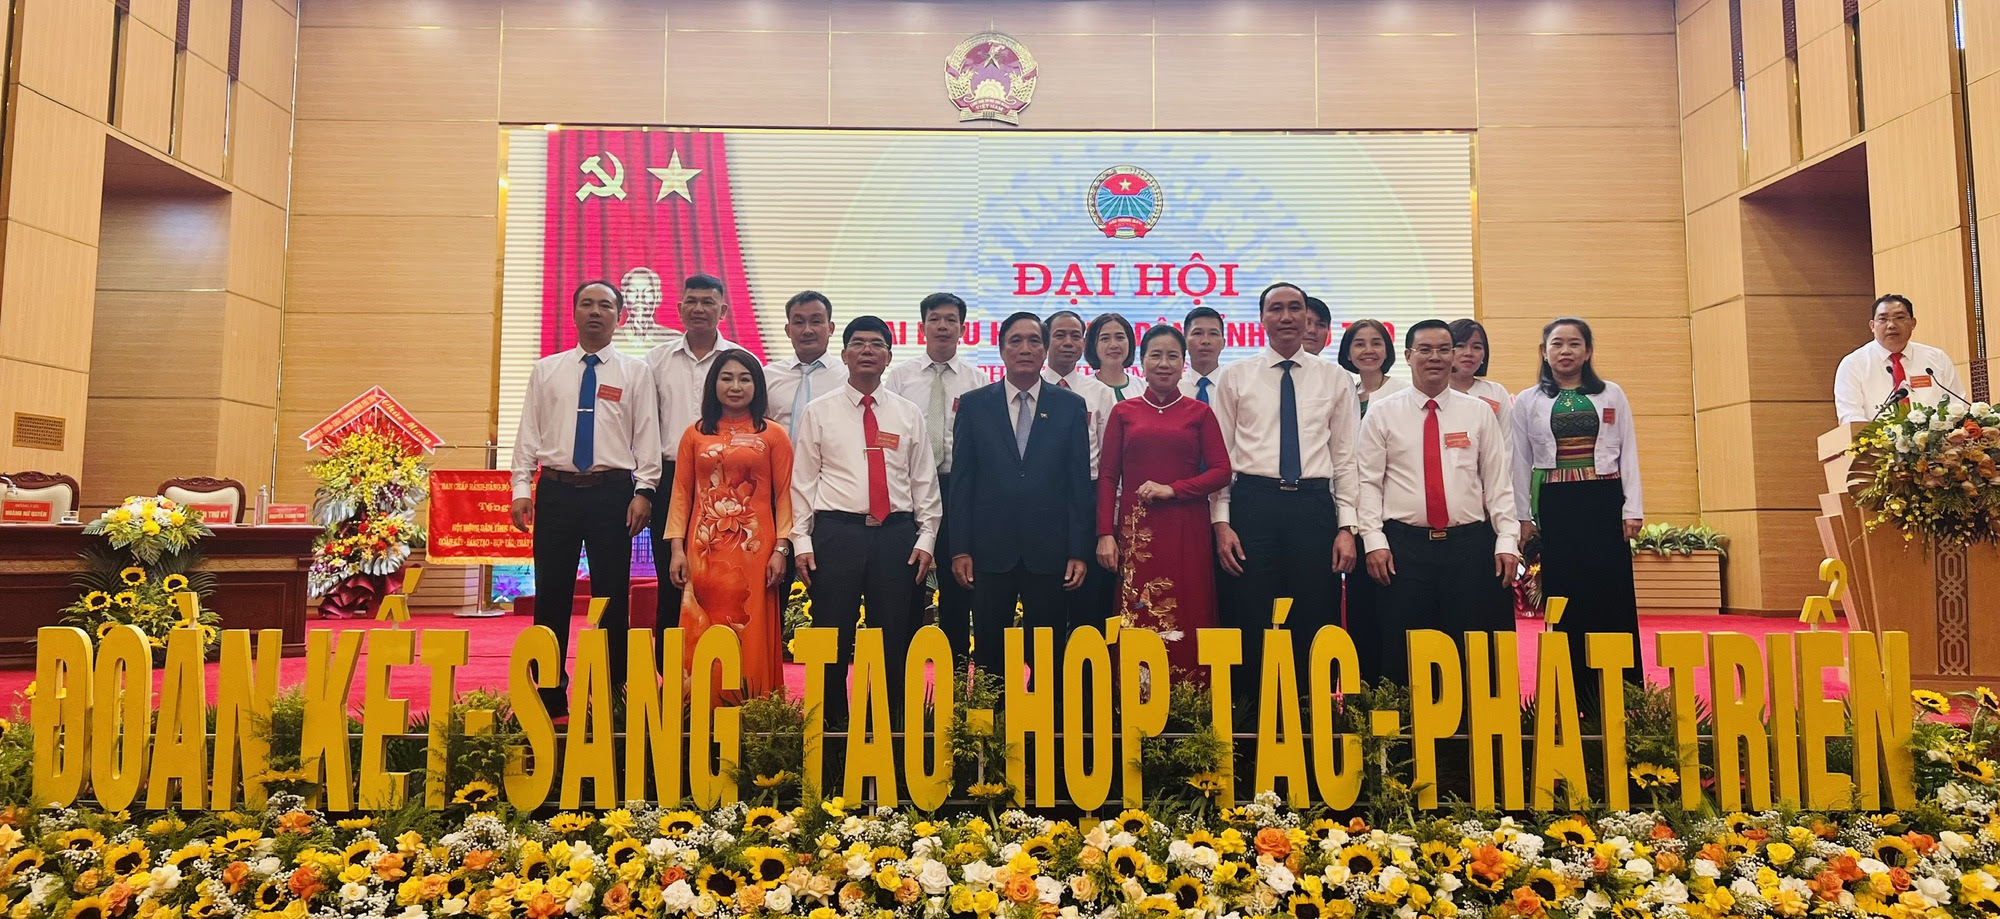 Bí thư Tỉnh ủy Phú Thọ đề nghị Hội Nông dân tỉnh tập trung thực hiện 4 nhiệm vụ trọng tâm - Ảnh 2.